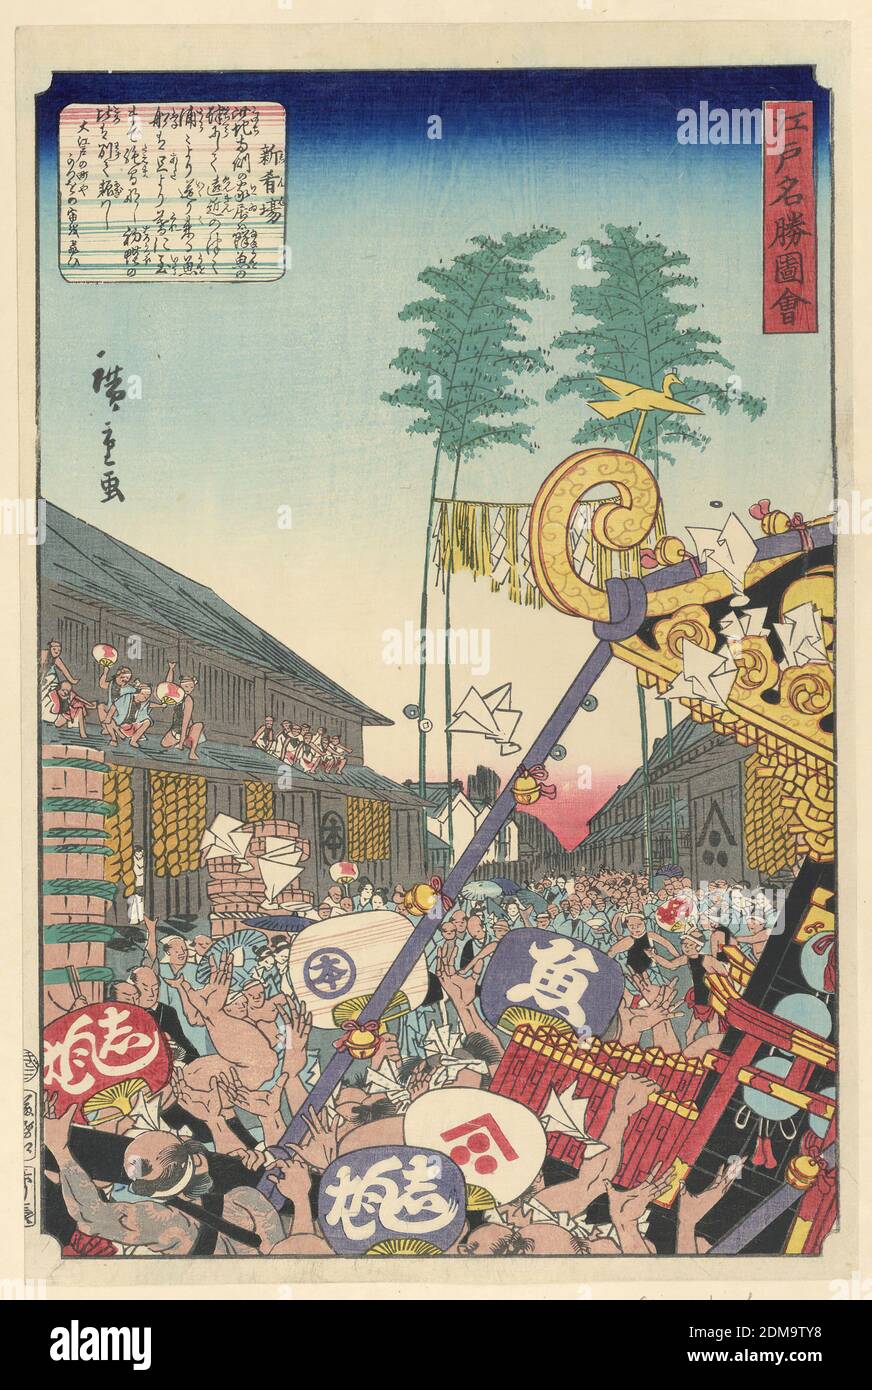 Festival, Ando Hiroshige, japanisch, 1797–1858, Holzschnitt in farbiger Tinte auf Papier, dieser Sommerdruck zeigt eine überfüllte Straße voller Menschen und Fans. Die Front zeigt eine kippbare Festivalstruktur, bekannt als Mikoshi. Männer singen, um Rhythmus zu halten, während sie diesen stark verzierten Schrein die Straße hinunter ziehen. Menschen, die die Szene feierten und beobachteten, kletterten auf das Dach, um eine bessere Sicht zu erhalten., Japan, 18. Jahrhundert, Landschaften, Drucken Stockfoto